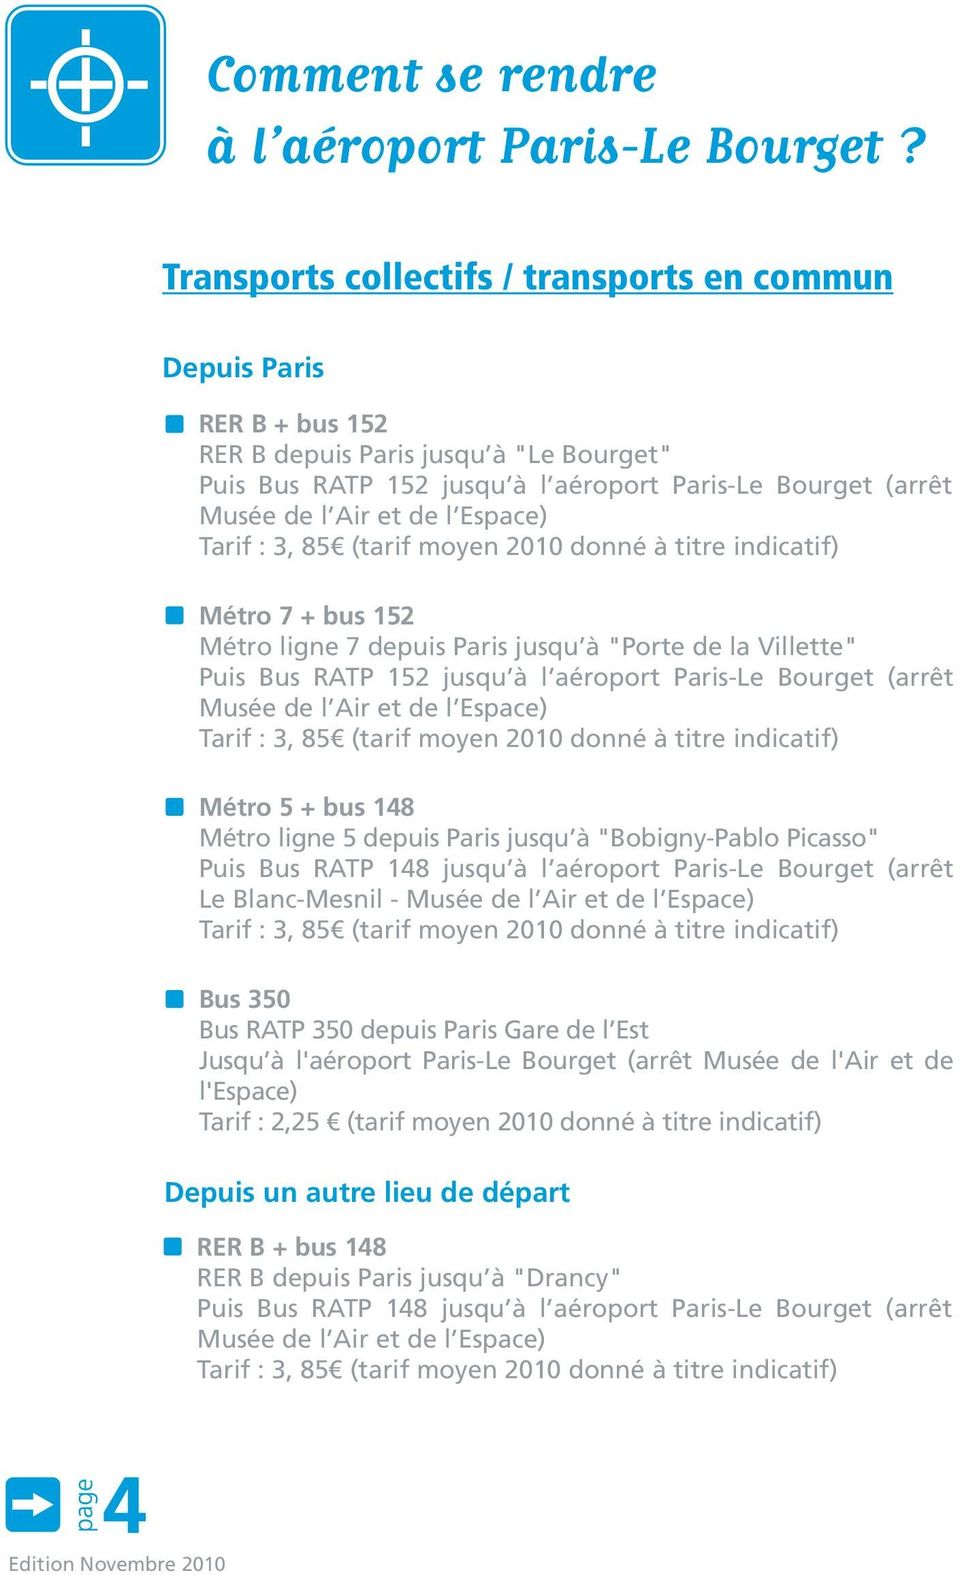 Espace) Tarif : 3, 85 (tarif moyen 2010 donné à titre indicatif) Métro 7 + bus 152 Métro ligne 7 depuis Paris jusqu à "Porte de la Villette" Puis Bus RATP 152 jusqu à l aéroport Paris-Le Bourget